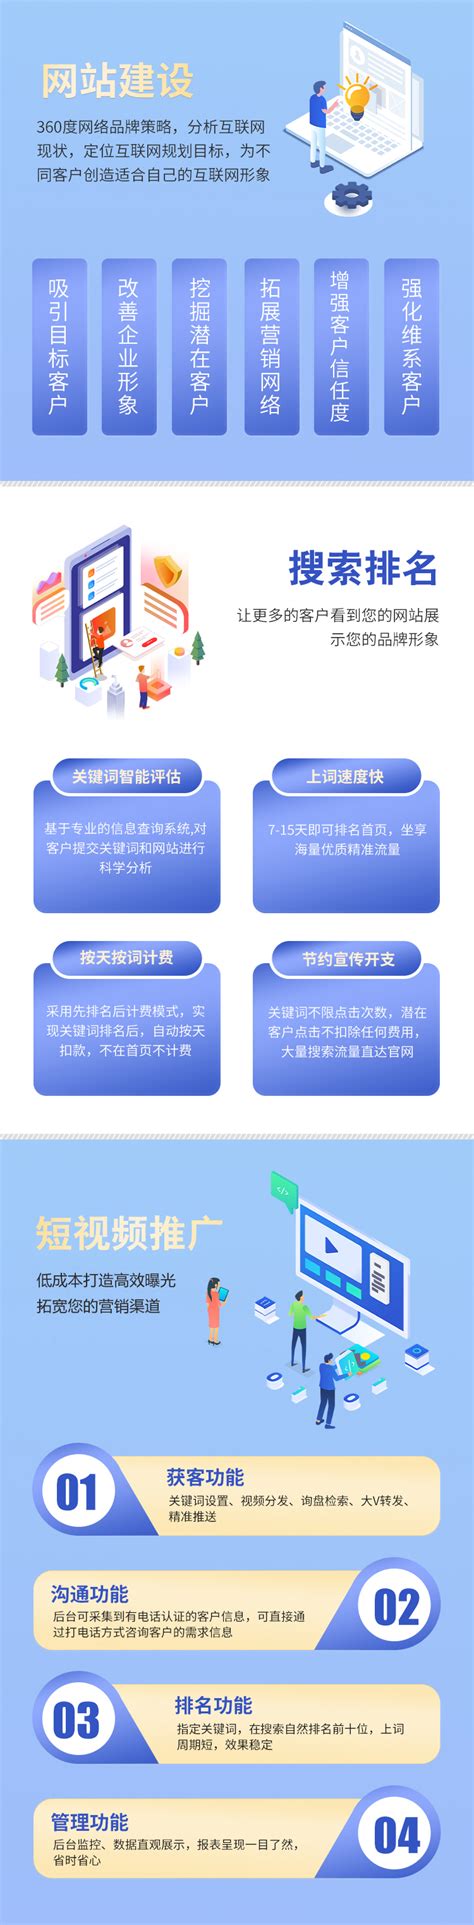 重庆网站建设目标分析